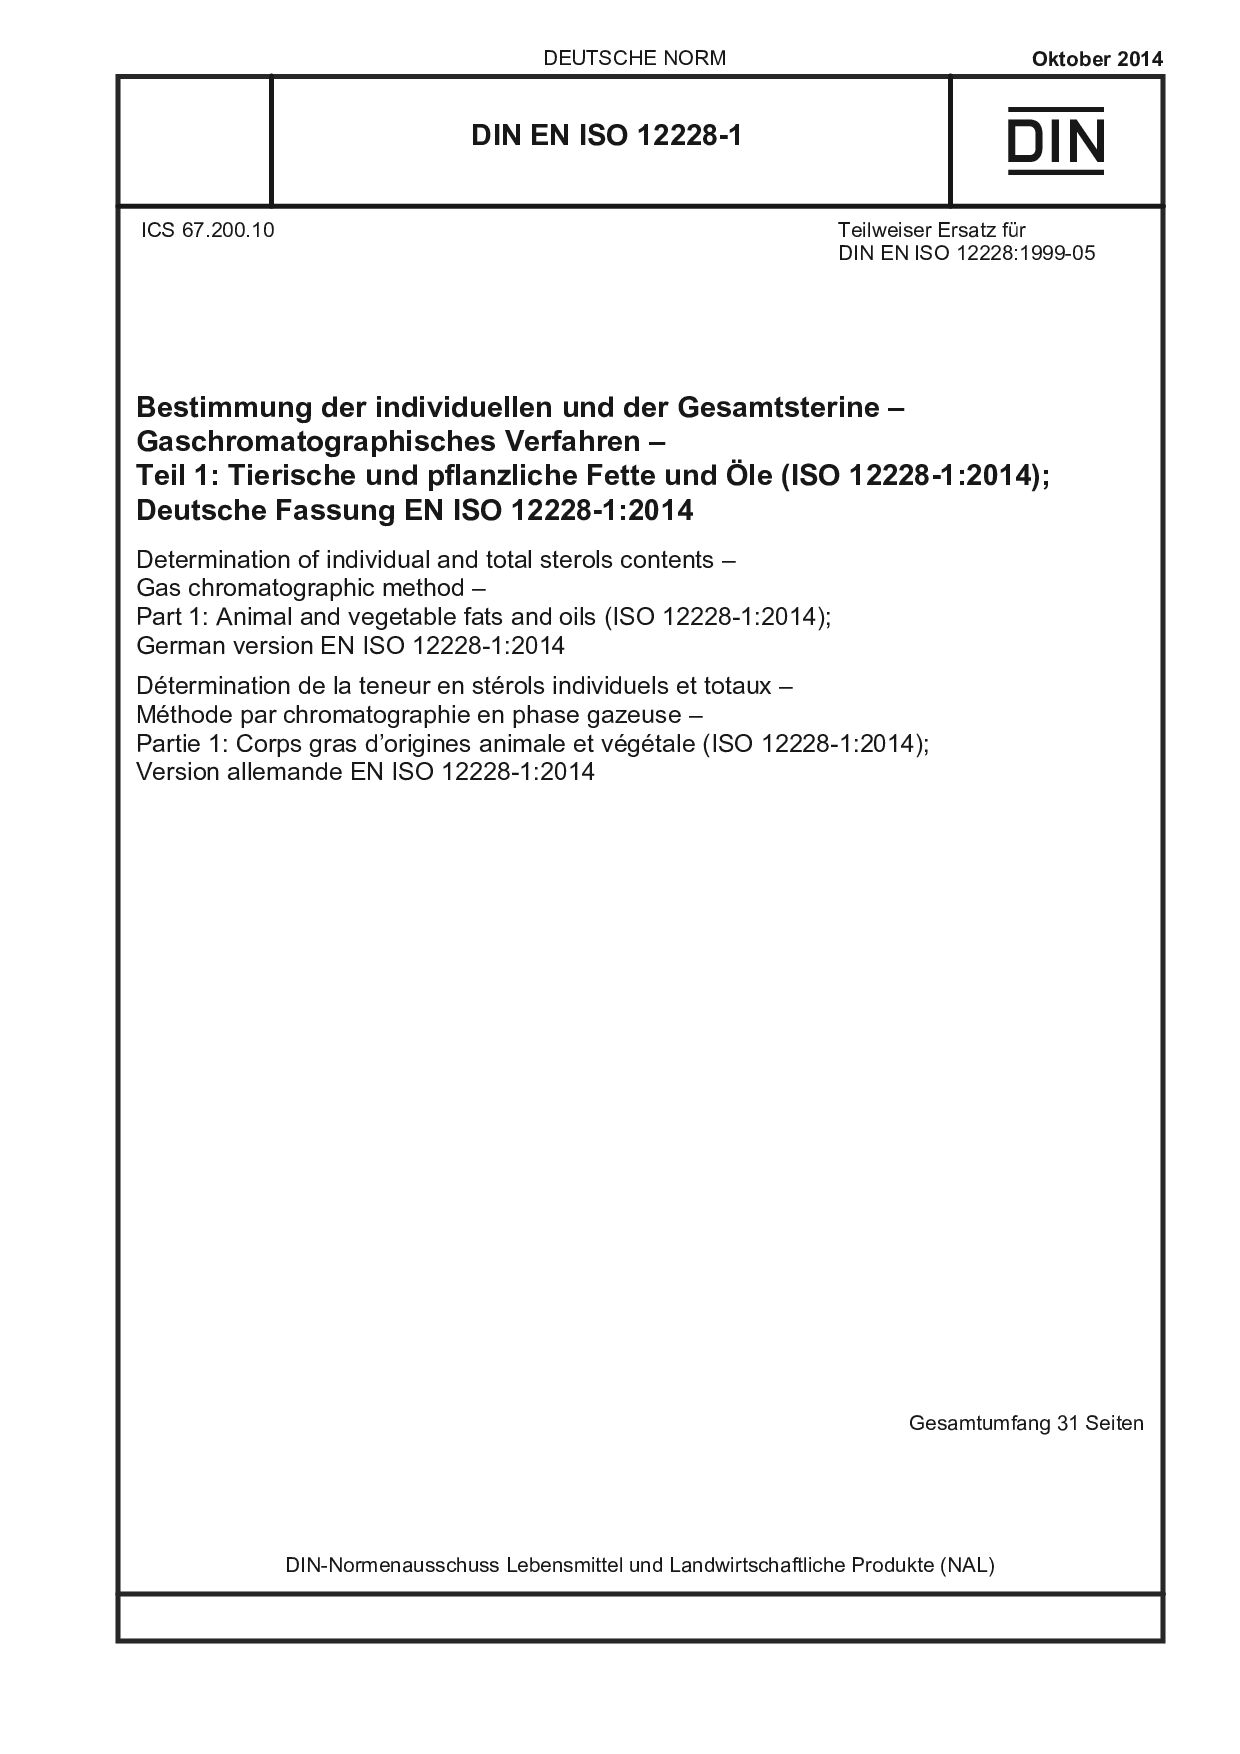 DIN EN ISO 12228-1:2014封面图